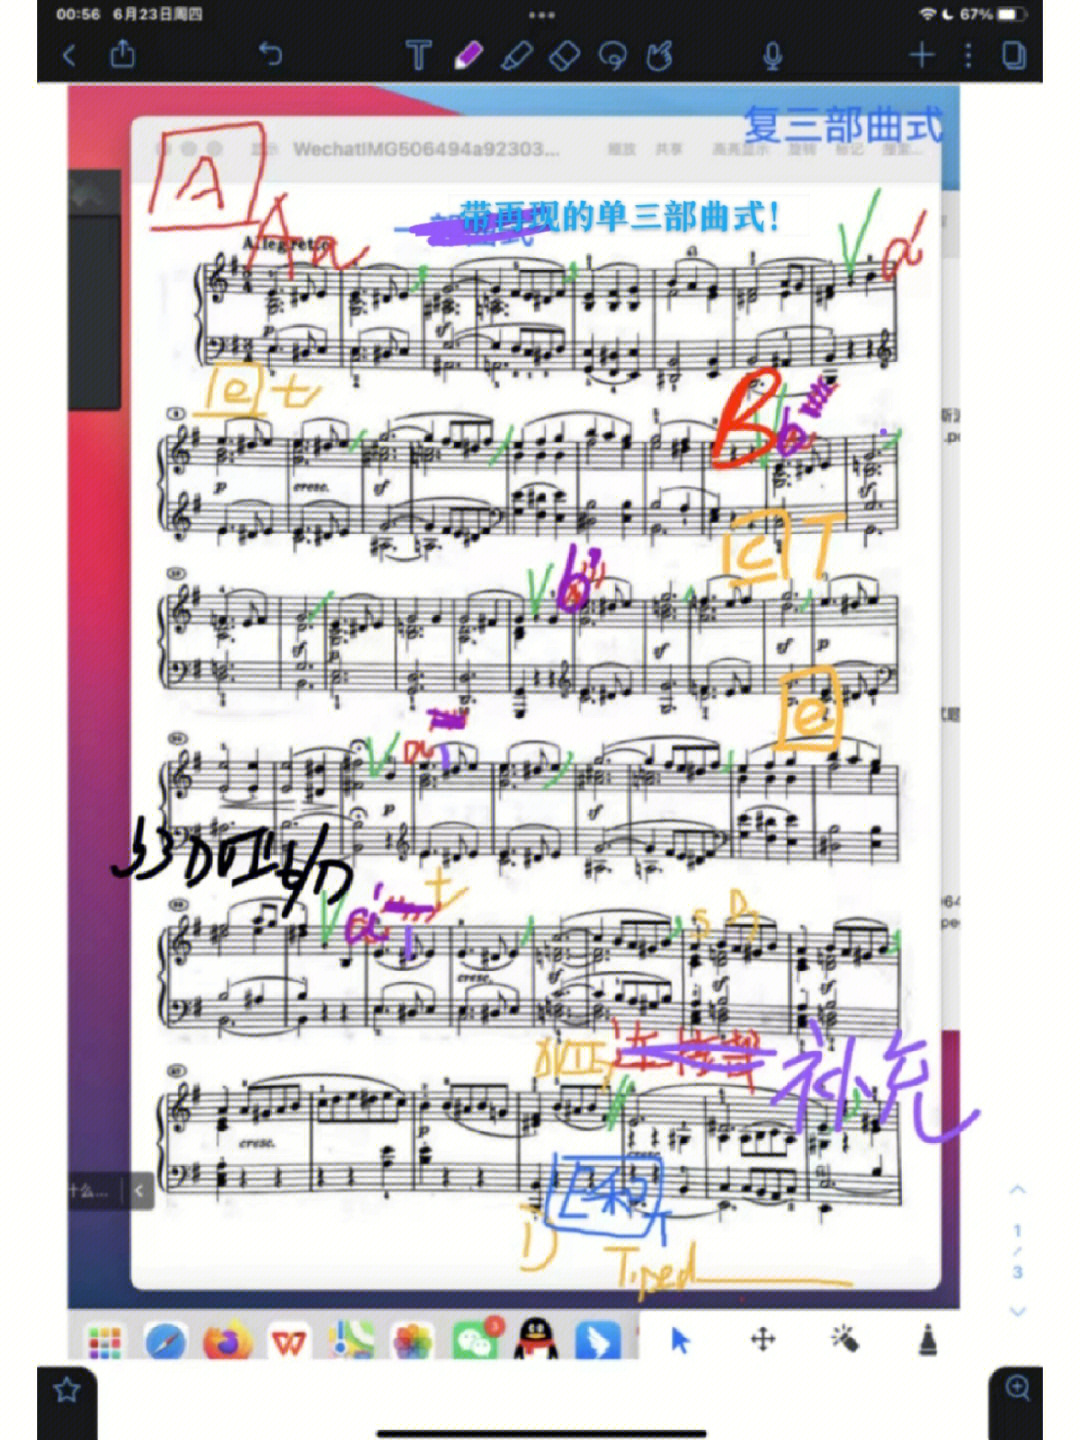 曲式分析贝多芬钢琴奏鸣曲第二乐章op14